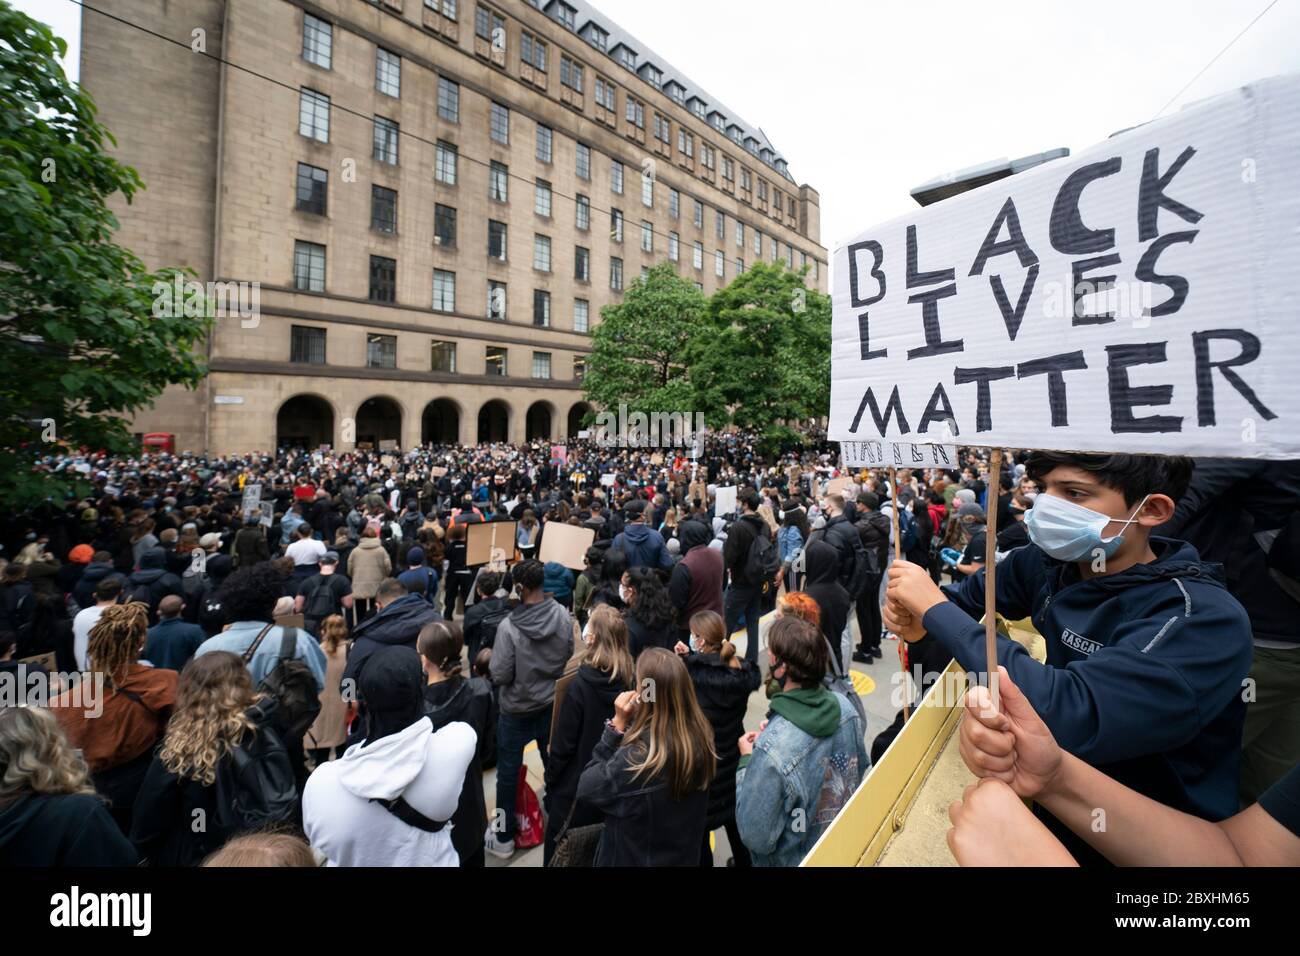 Manchester, Royaume-Uni. 7 juin 2020. Des membres du public sont vus à une manifestation Black Lives Matter, Manchester, Royaume-Uni. Crédit : Jon Super/Alay Live News. Banque D'Images